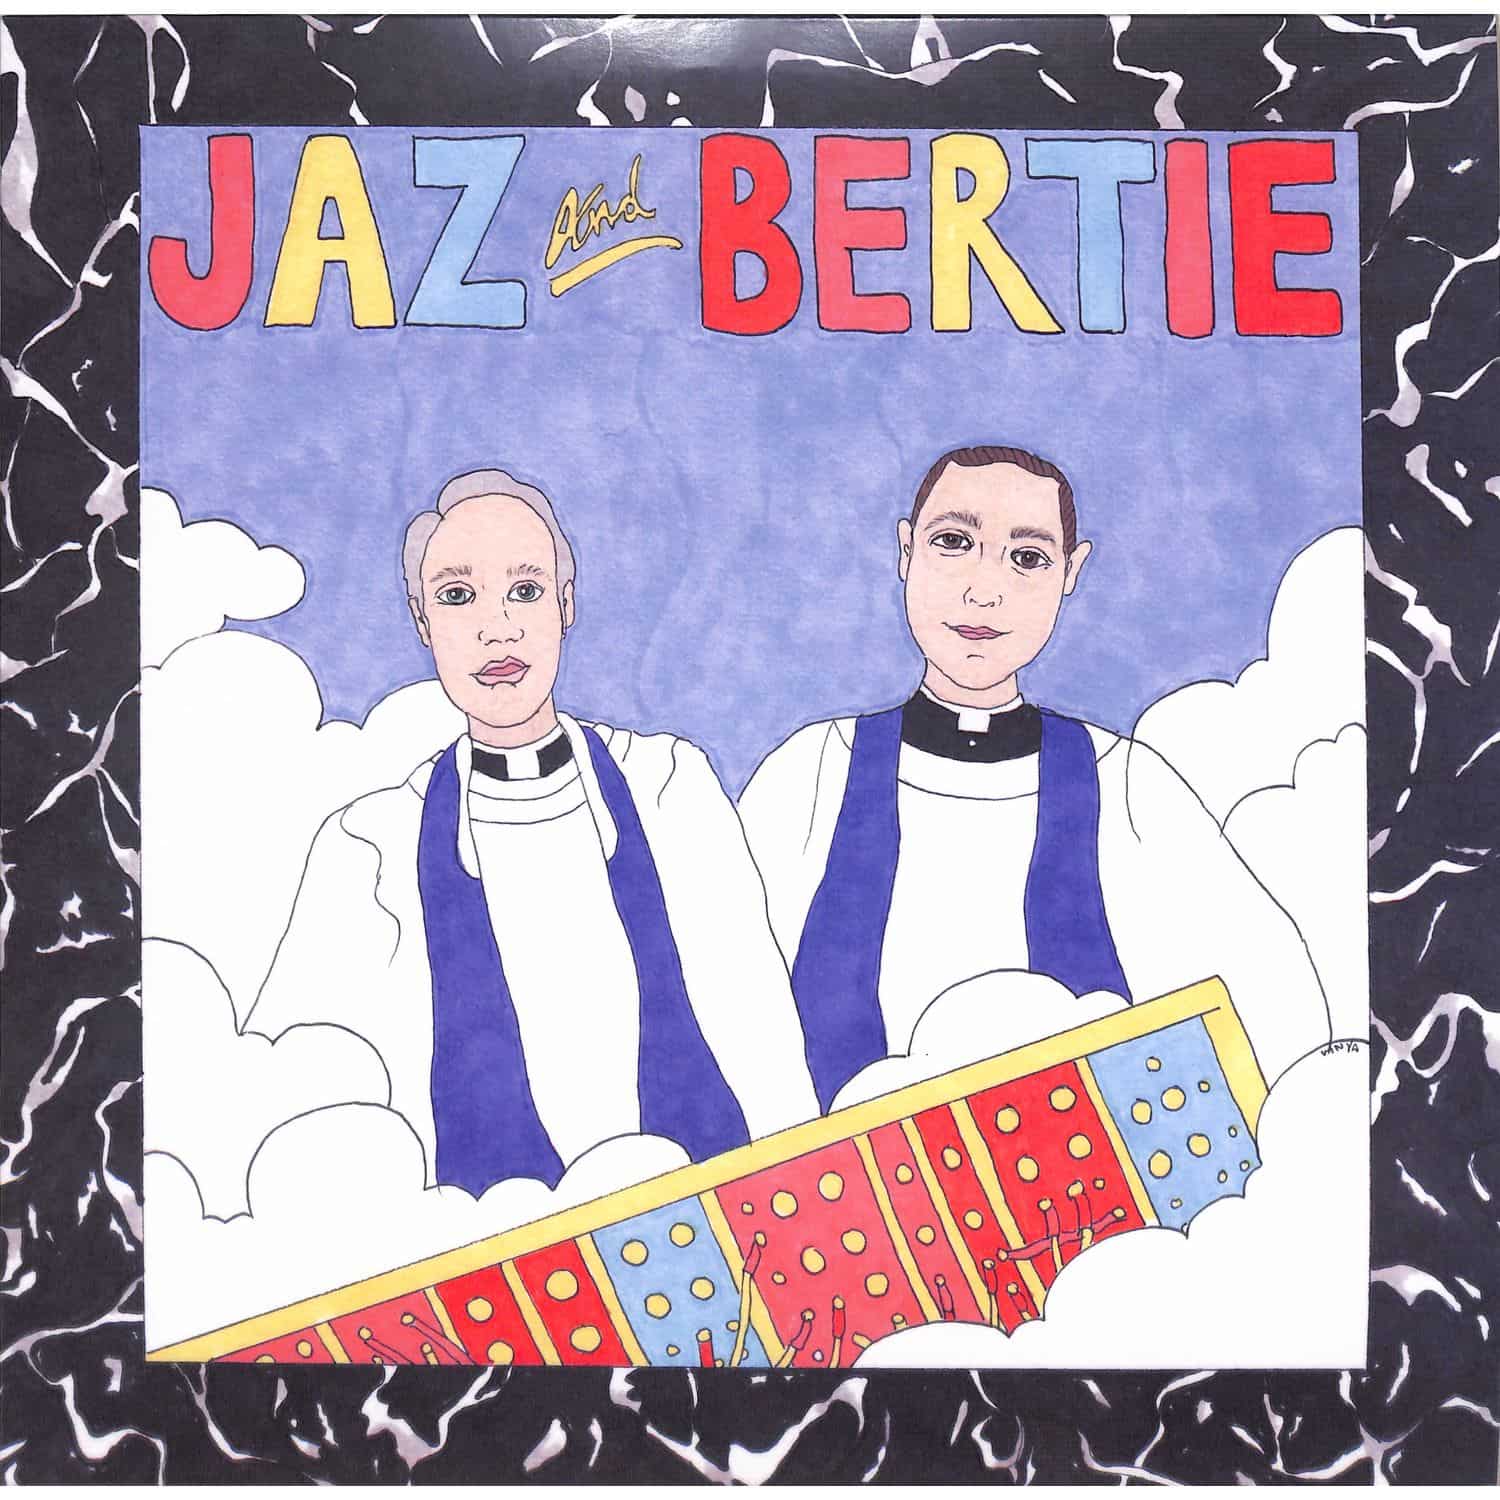 Jaz & Bertie - JAZ & BERTIE EP